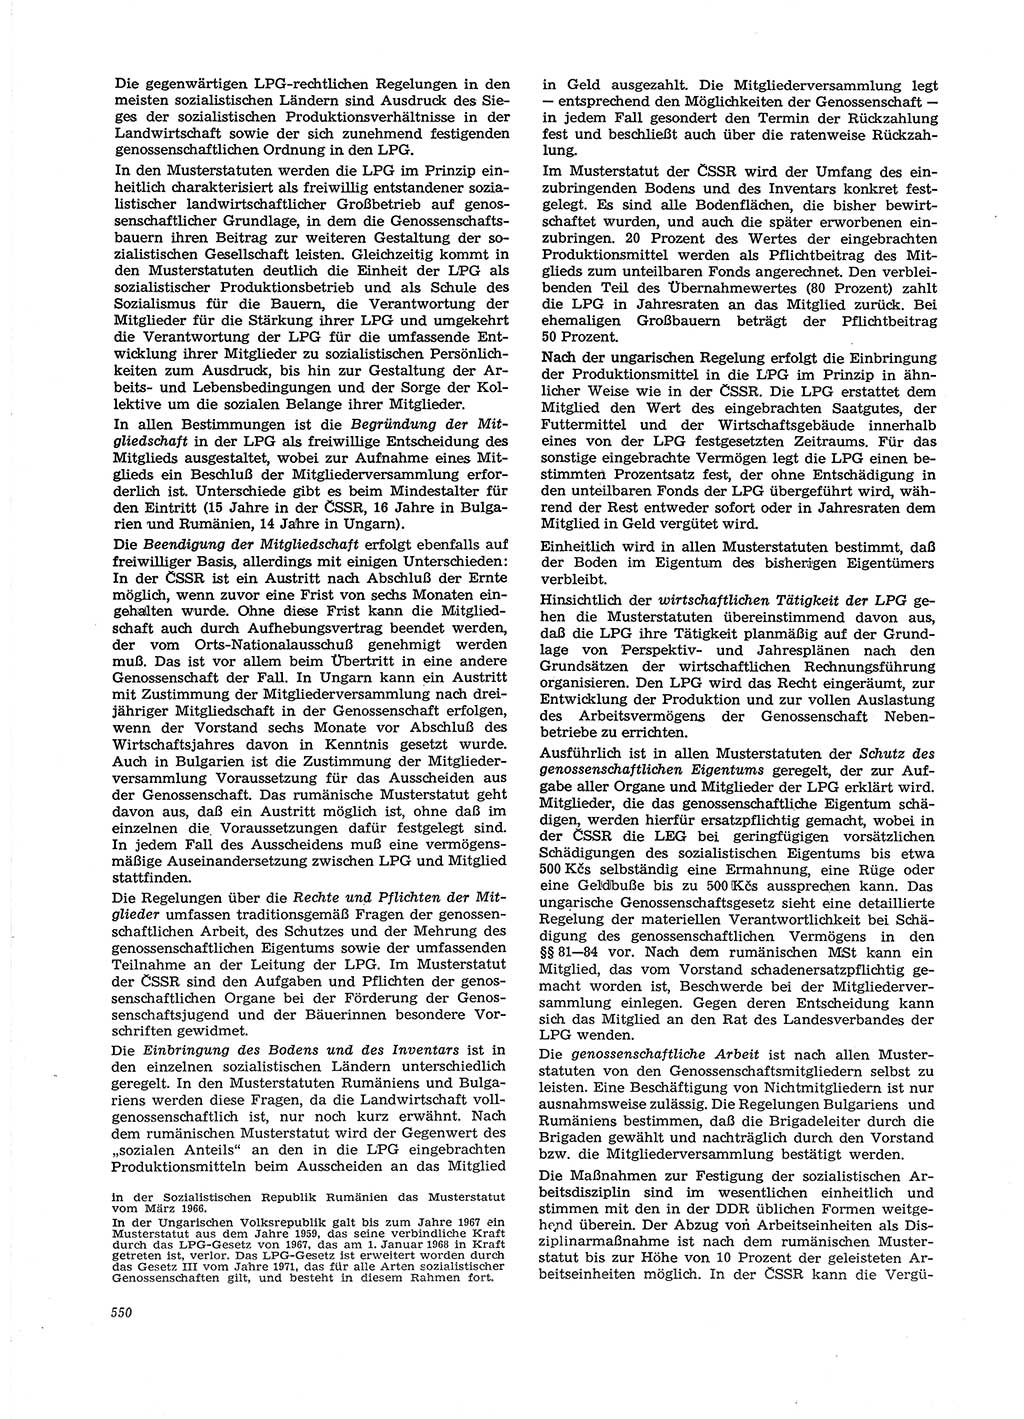 Neue Justiz (NJ), Zeitschrift für Recht und Rechtswissenschaft [Deutsche Demokratische Republik (DDR)], 29. Jahrgang 1975, Seite 550 (NJ DDR 1975, S. 550)